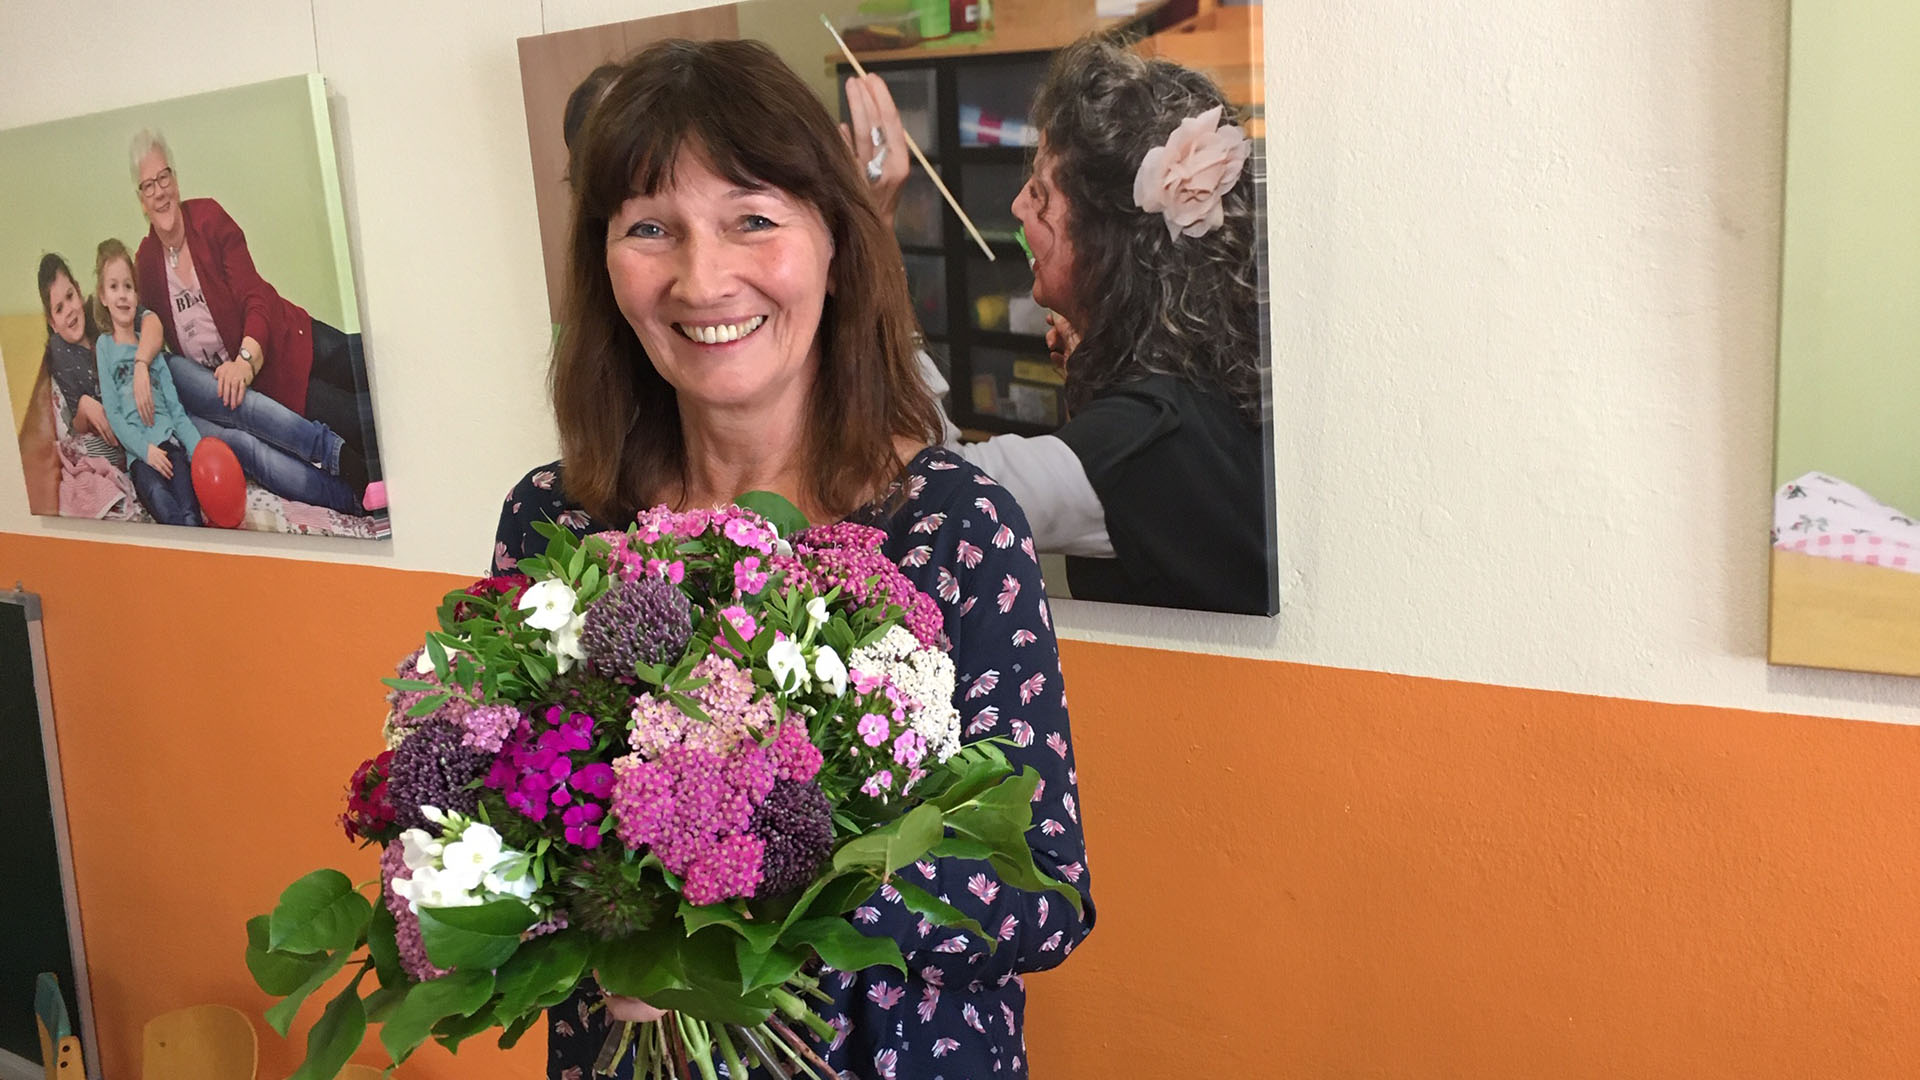 Elke Börner, Koordinatorin des Projektes "Großeltern auf Zeit", mit Blumenstrauß.